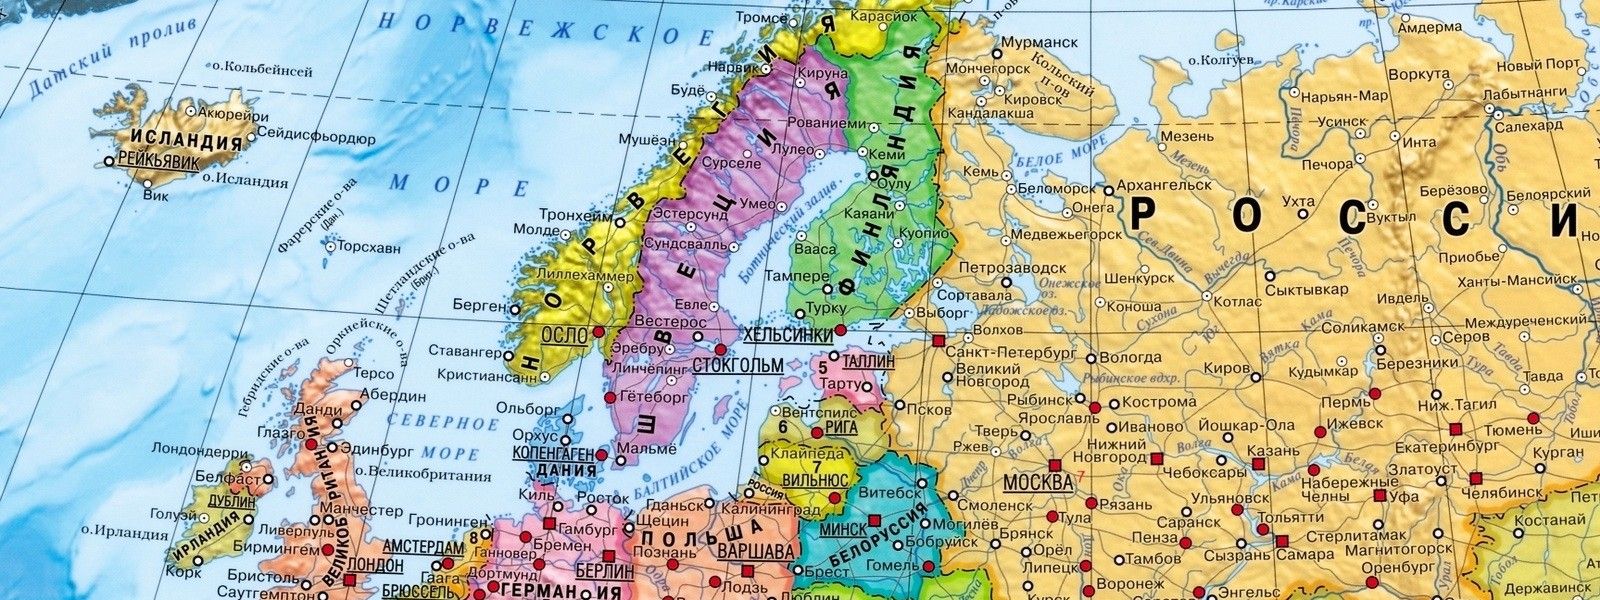 Страны Северной Европы — это культурно-политико-географический регион в Северной Европе и Северной Атлантике, включающий в себя государства Скандинавии — Данию (в том числе, Гренландию и Фарерские острова), Швецию и Норвегию — и исторически связанные с ними государства Финляндию (в том числе, Аландские острова) и Исландию. Иногда все эти государства называют скандинавскими странами или Скандинавией, что не совсем корректно...